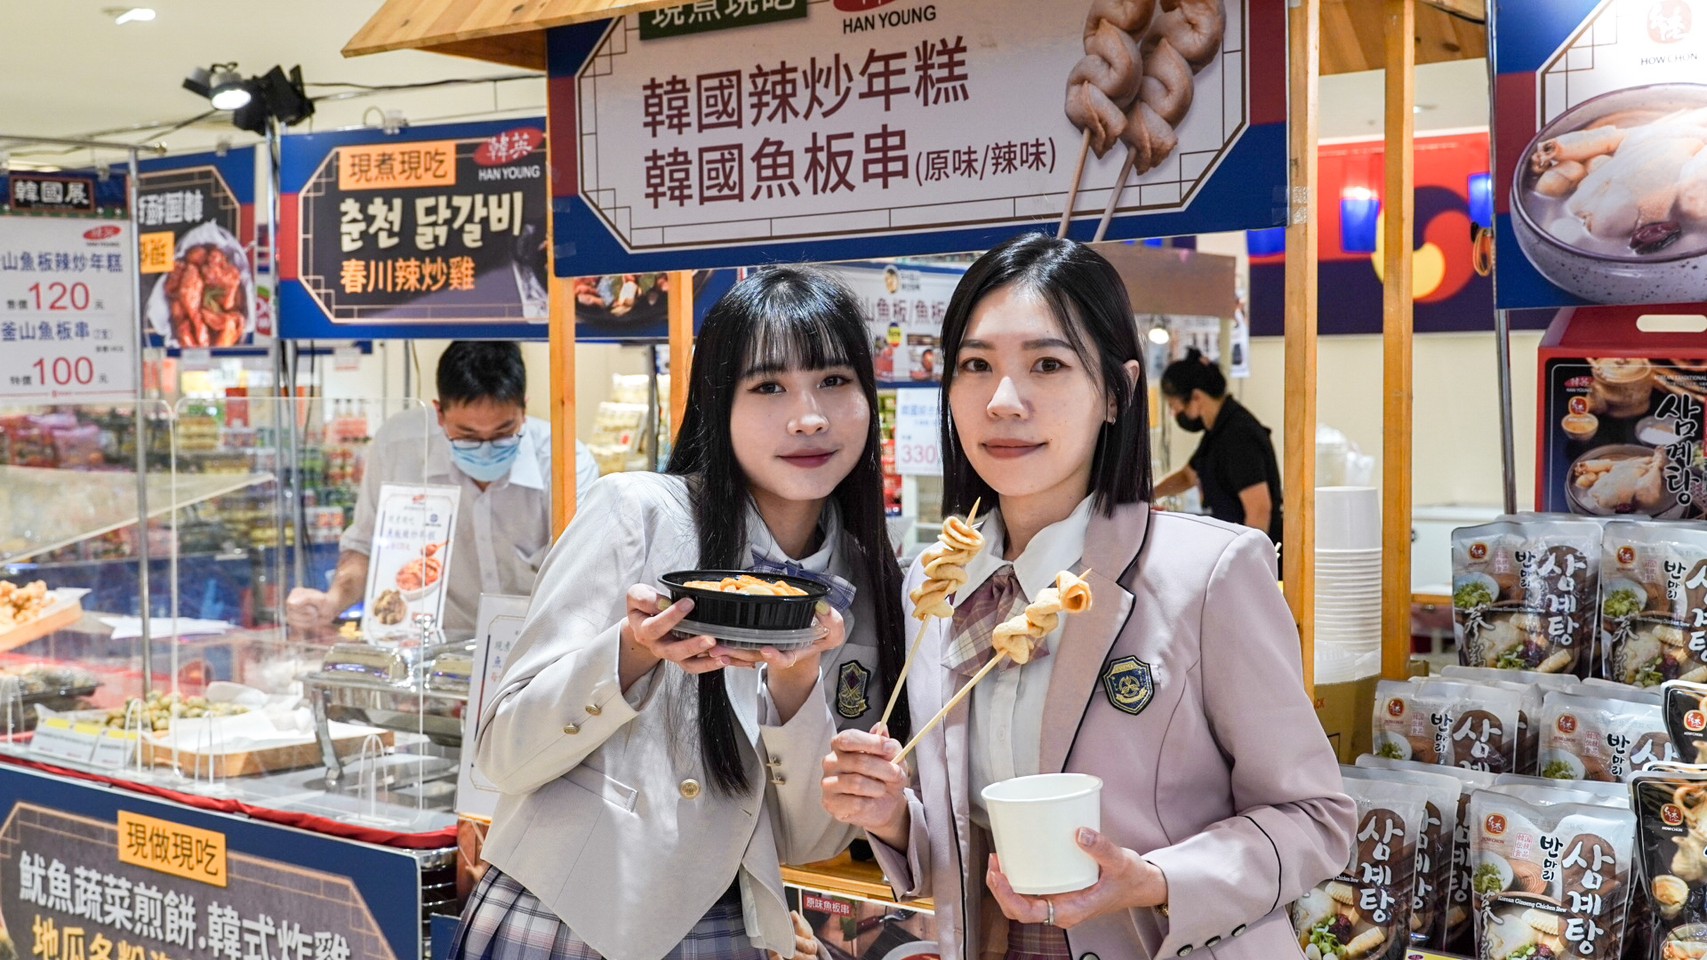 SOGO「韓國美食展」現場也首度邀請到「迷宮韓服」舉辦韓國高校制服體驗活動